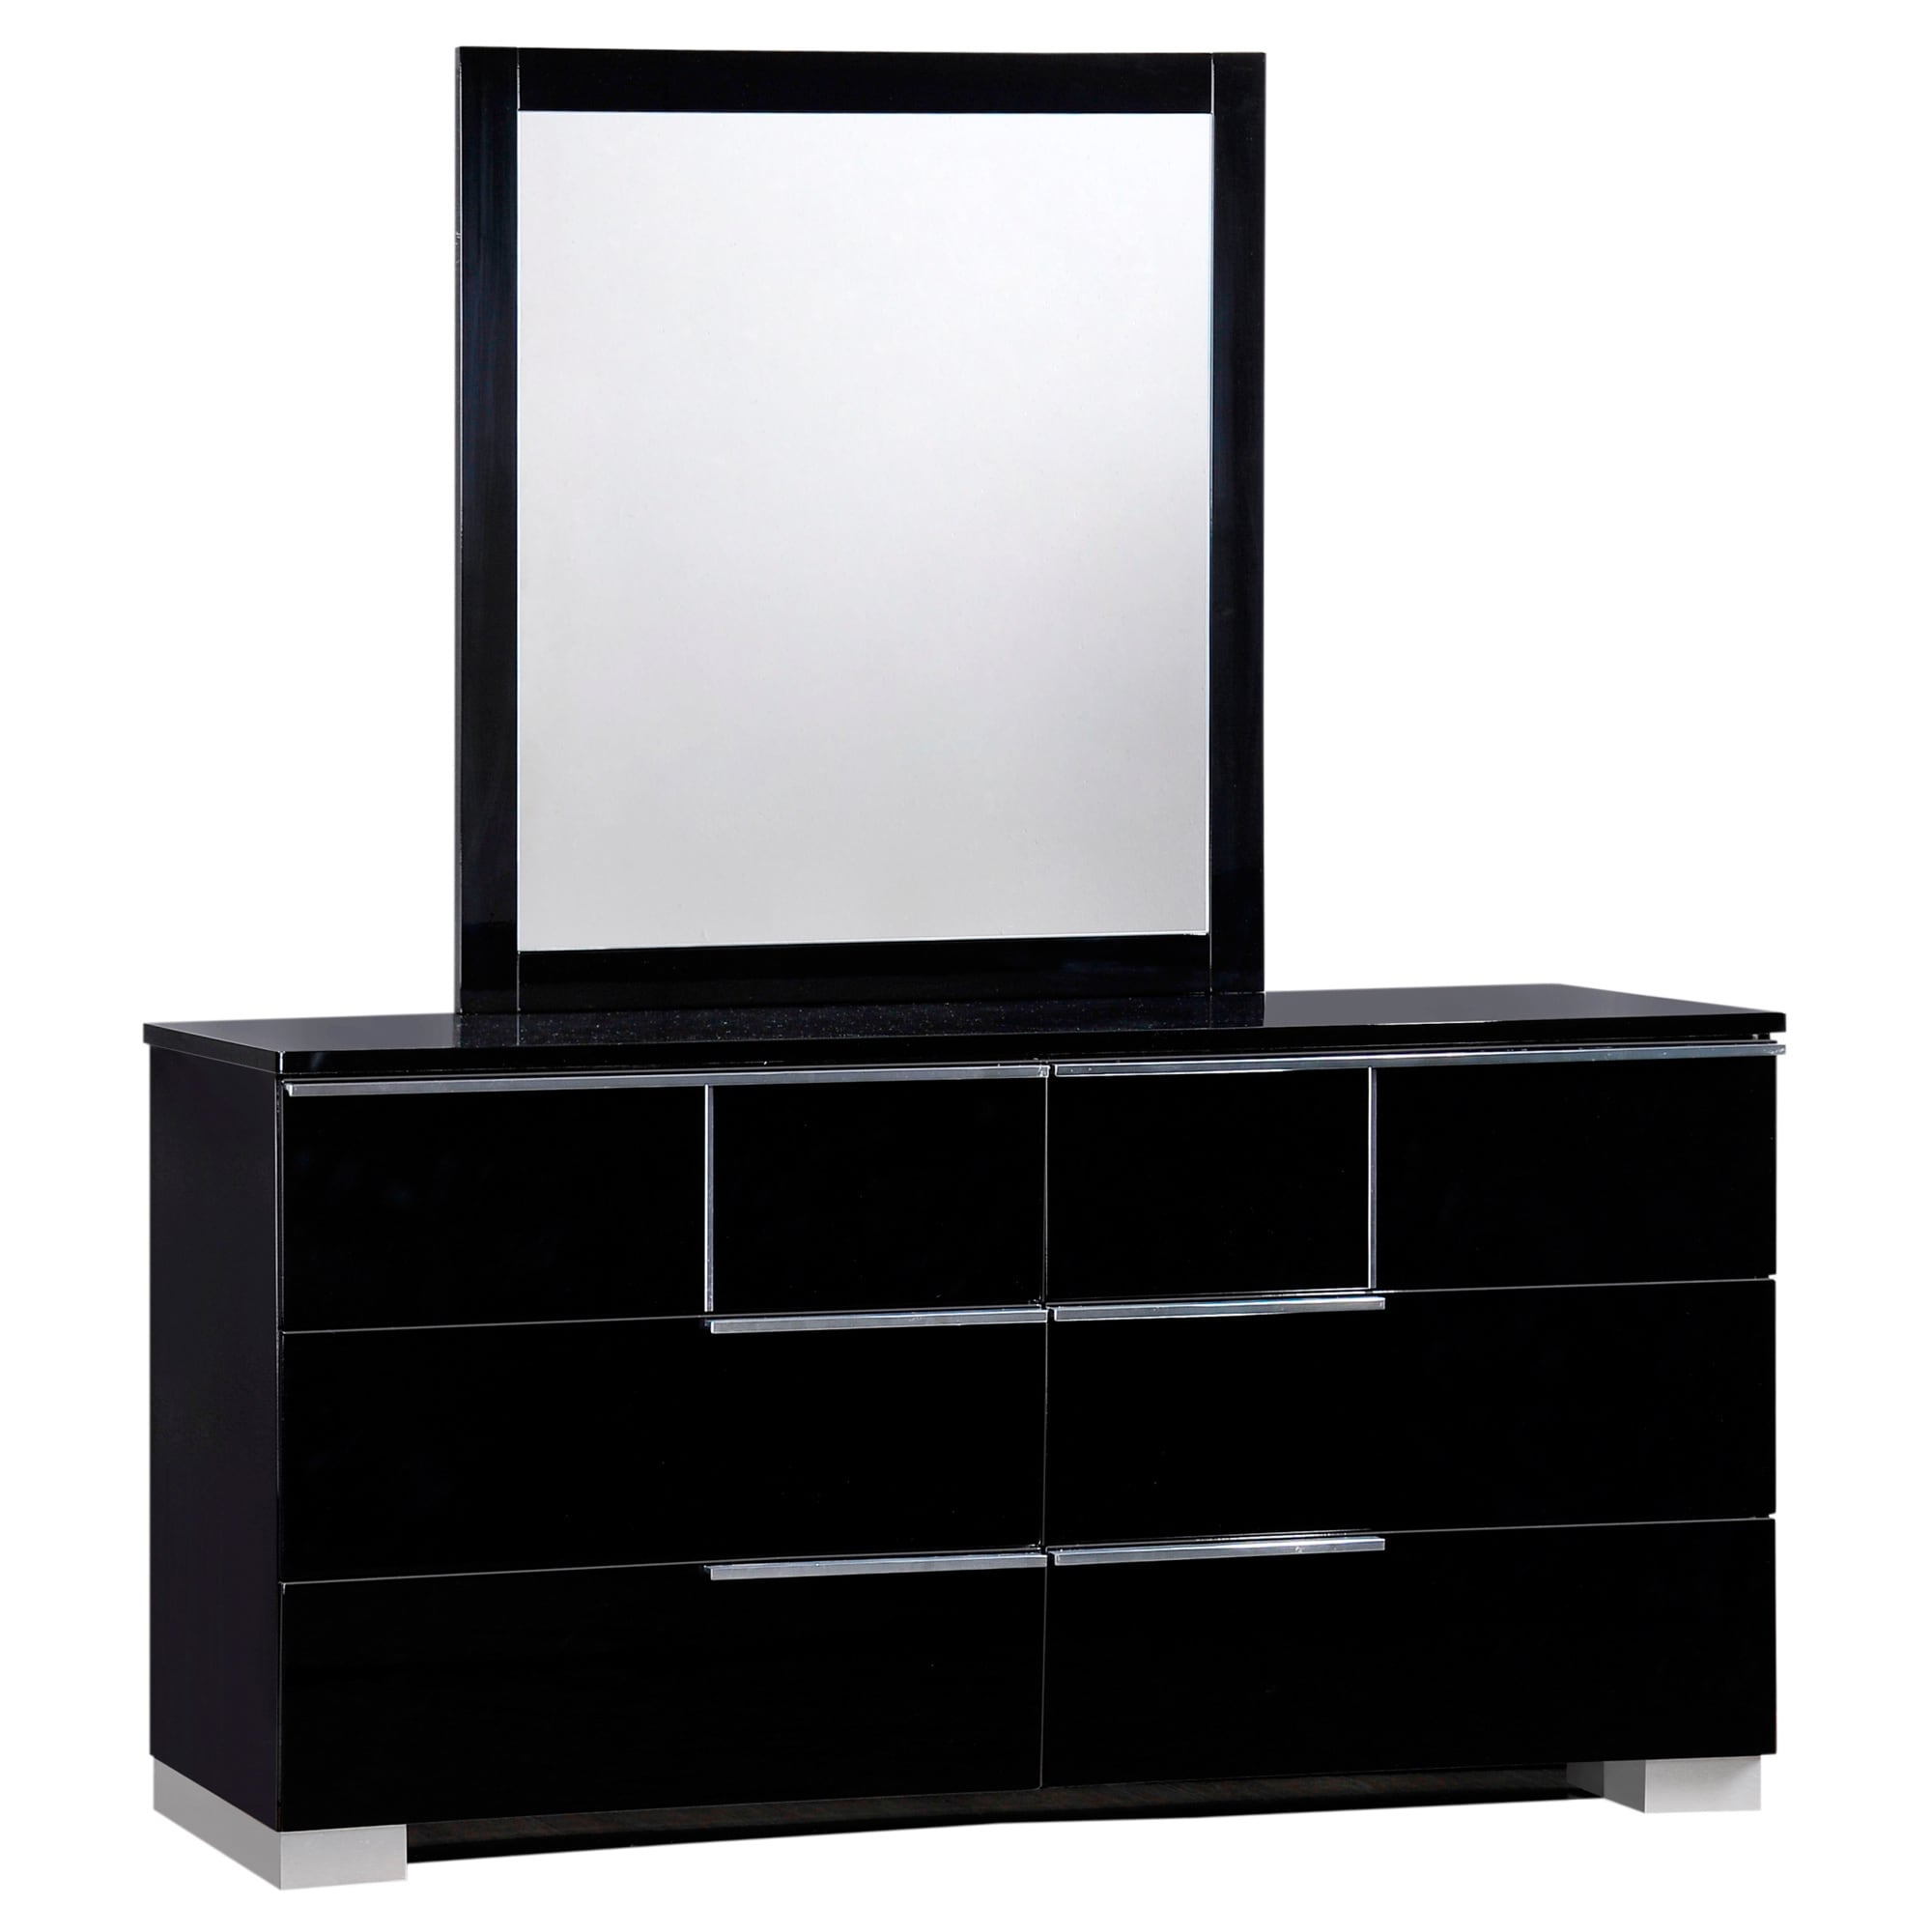 Shop Hailey High Gloss Black Dresser Overstock 9089120